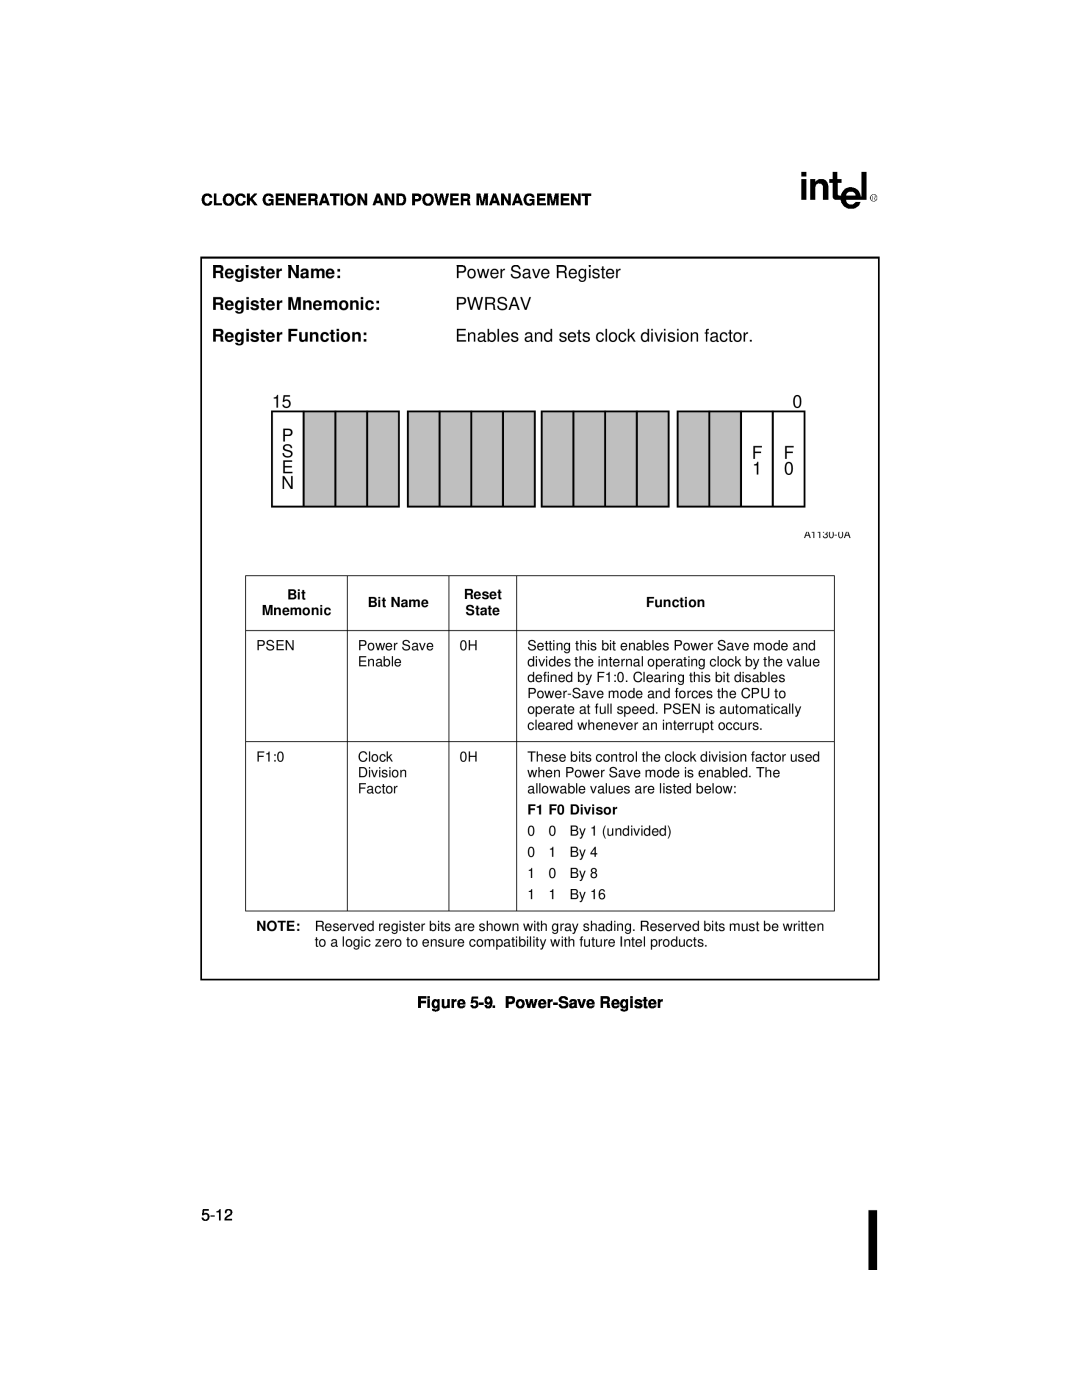 Intel 80C186XL, 80C188XL user manual Register Name Register Mnemonic Register Function, P S E N, Power Save Register PWRSAV 